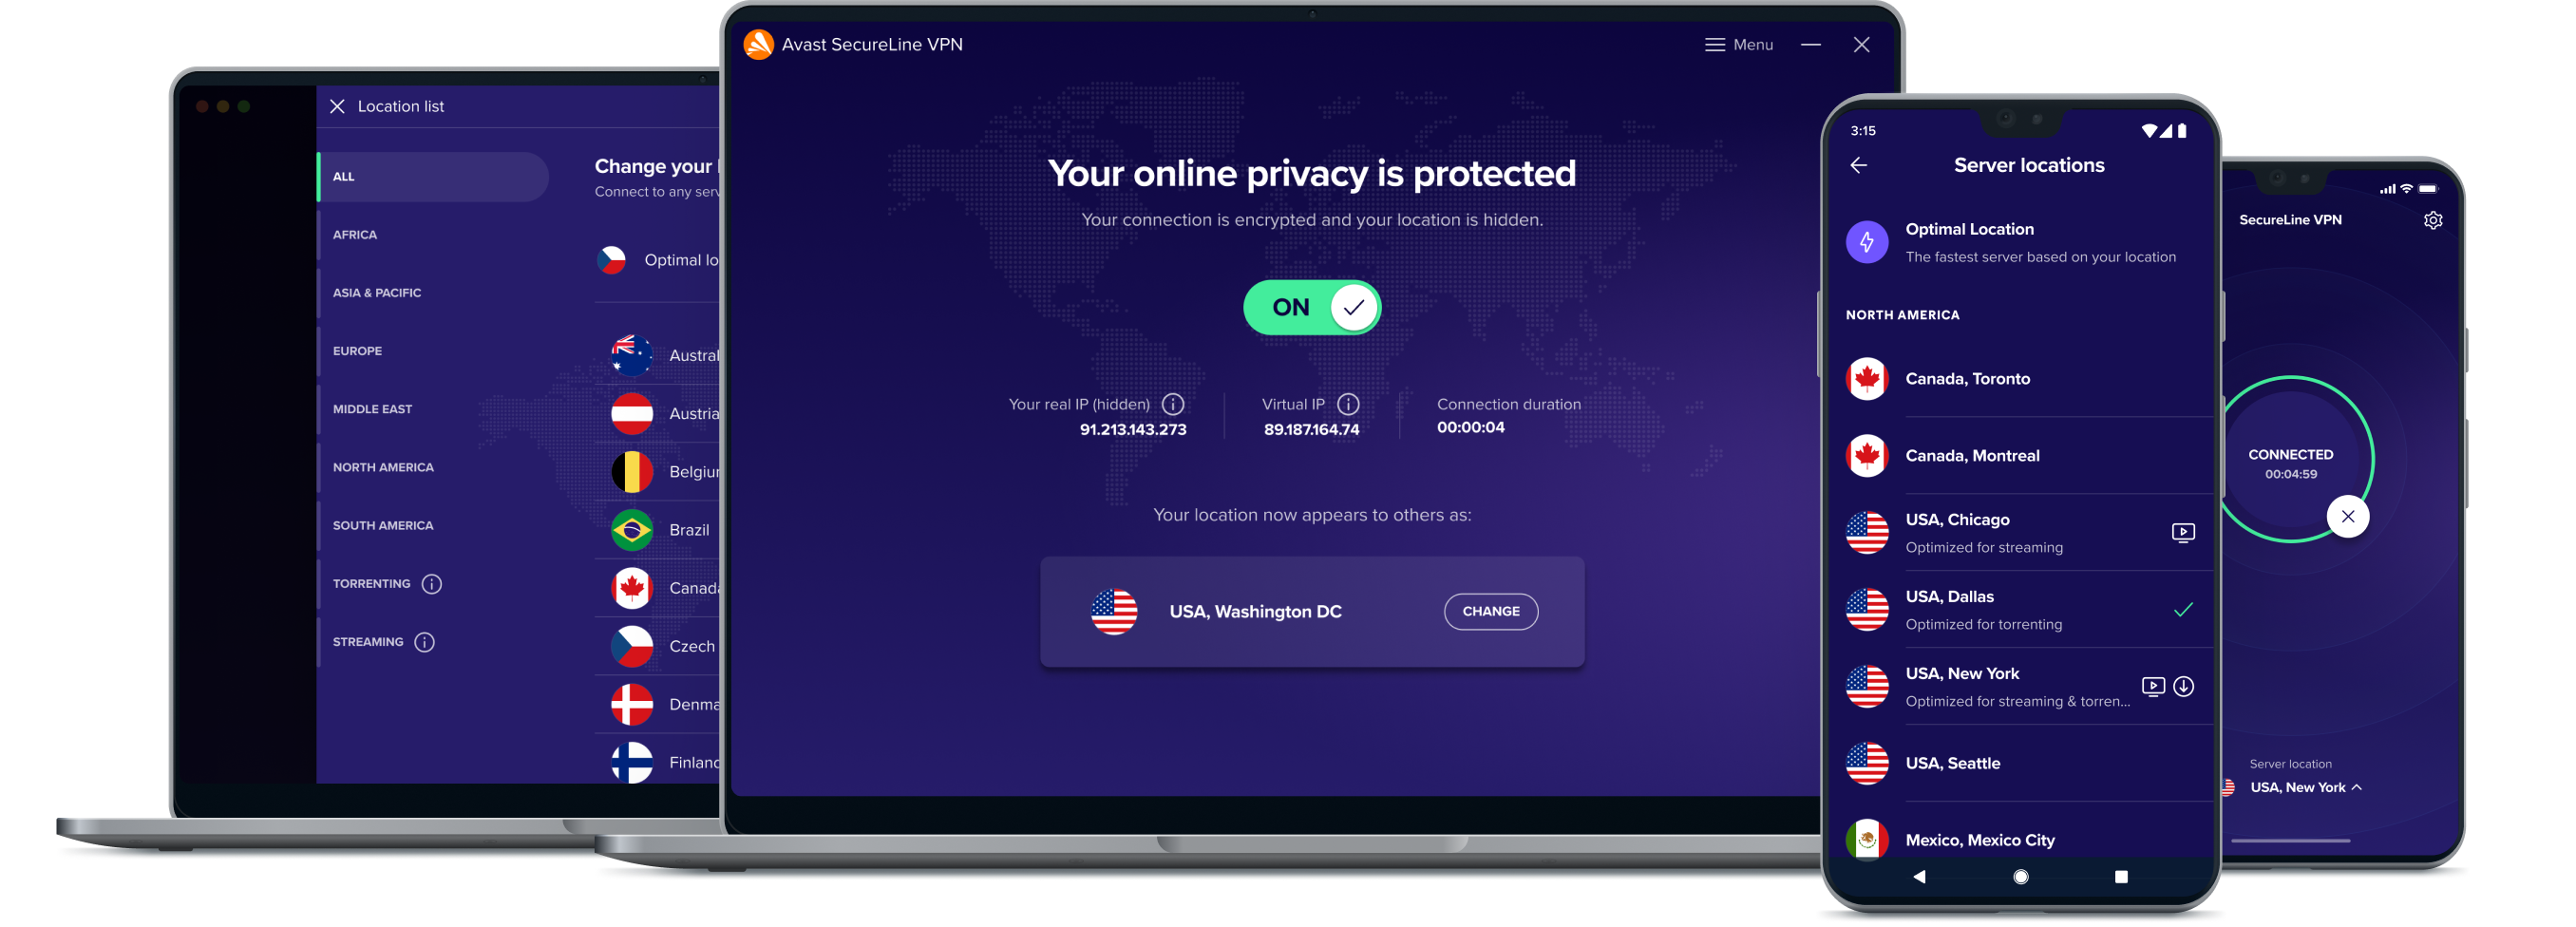 I-unlock ang higit na kalayaan sa online gamit ang aming serbisyo ng VPN